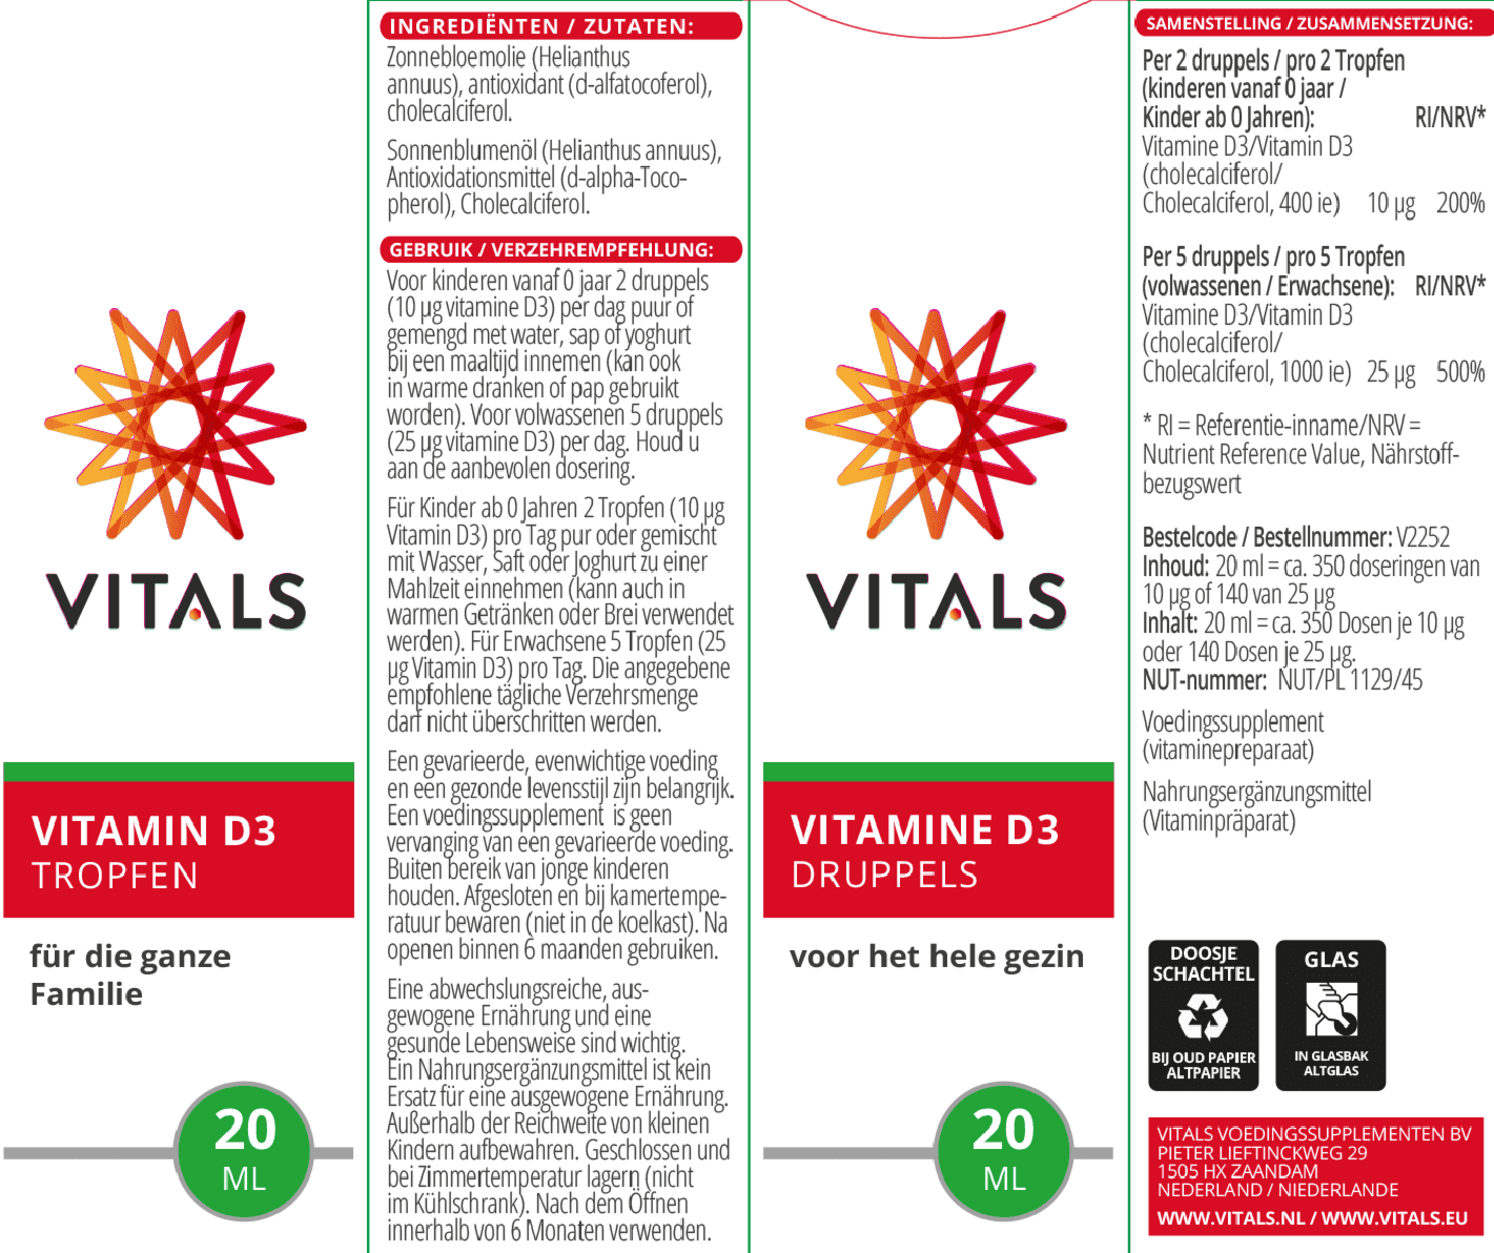 Vitamine D3 Druppels afbeelding van document #1, etiket